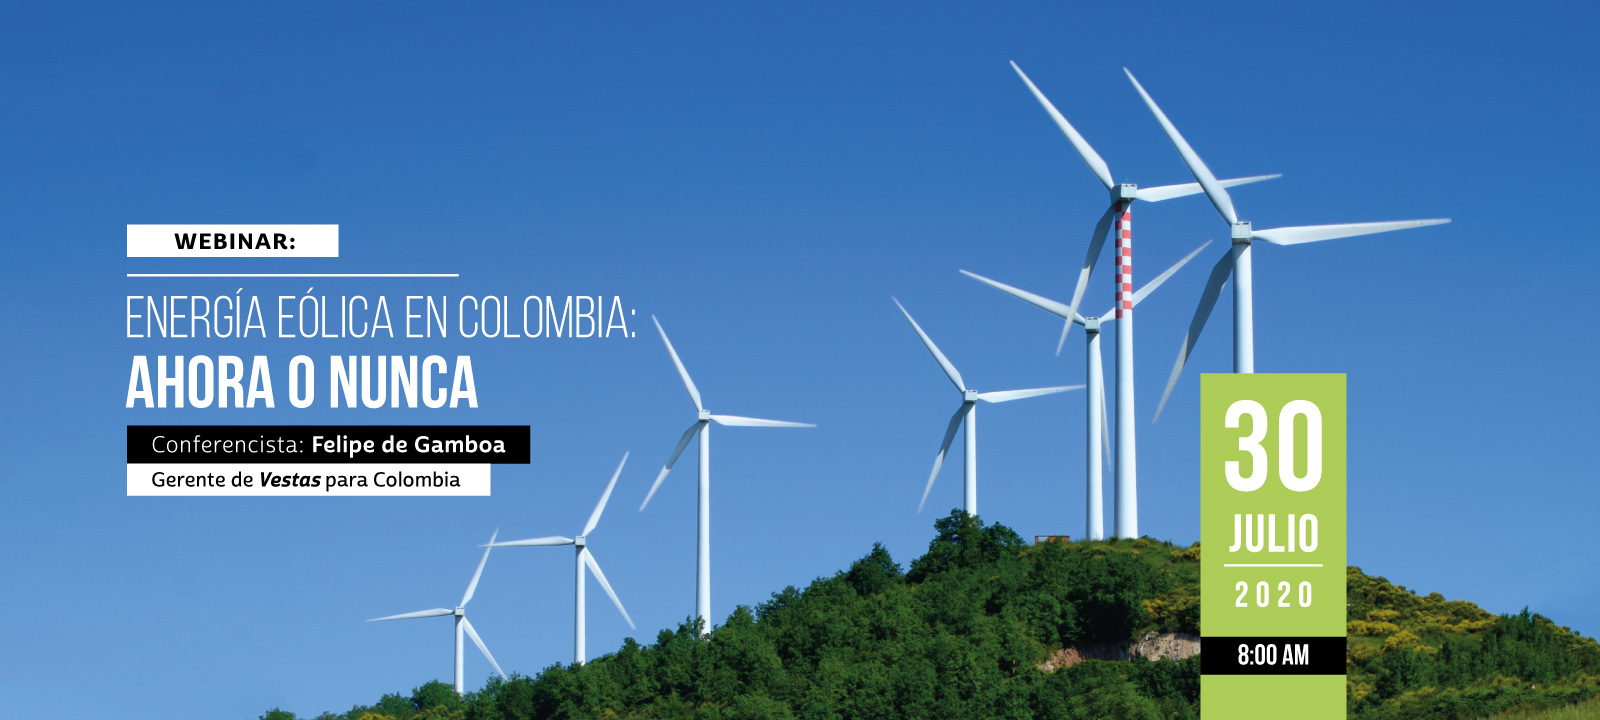 En este webinar Felipe de Gamboa hablará sobre las ventajas de la energía eólica para Colombia